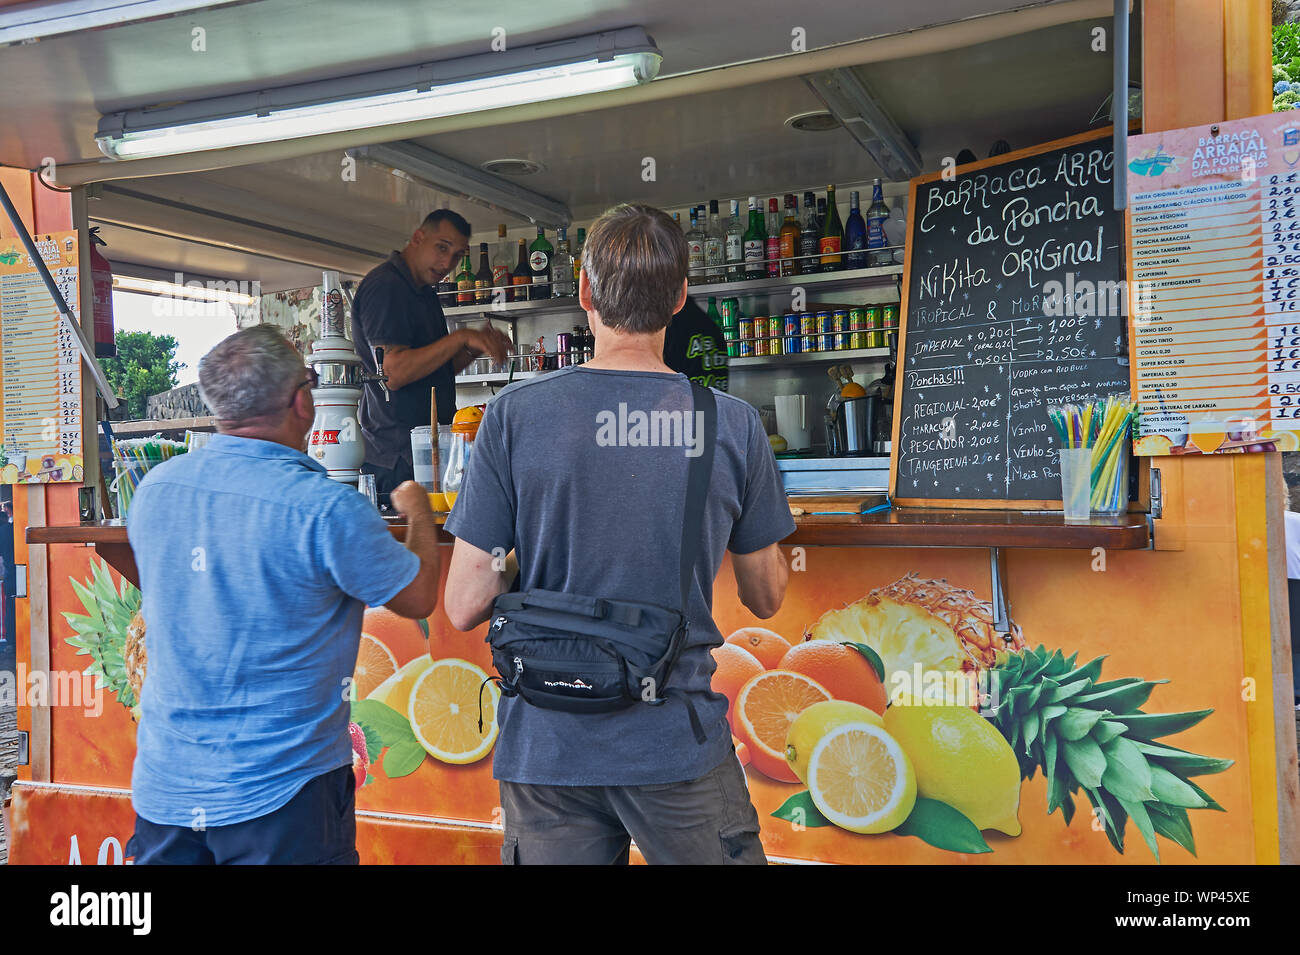 Persone che acquistano Poncha, un locale la bevanda alcolica, da un venditore ambulante di Funchal, Madeira Foto Stock